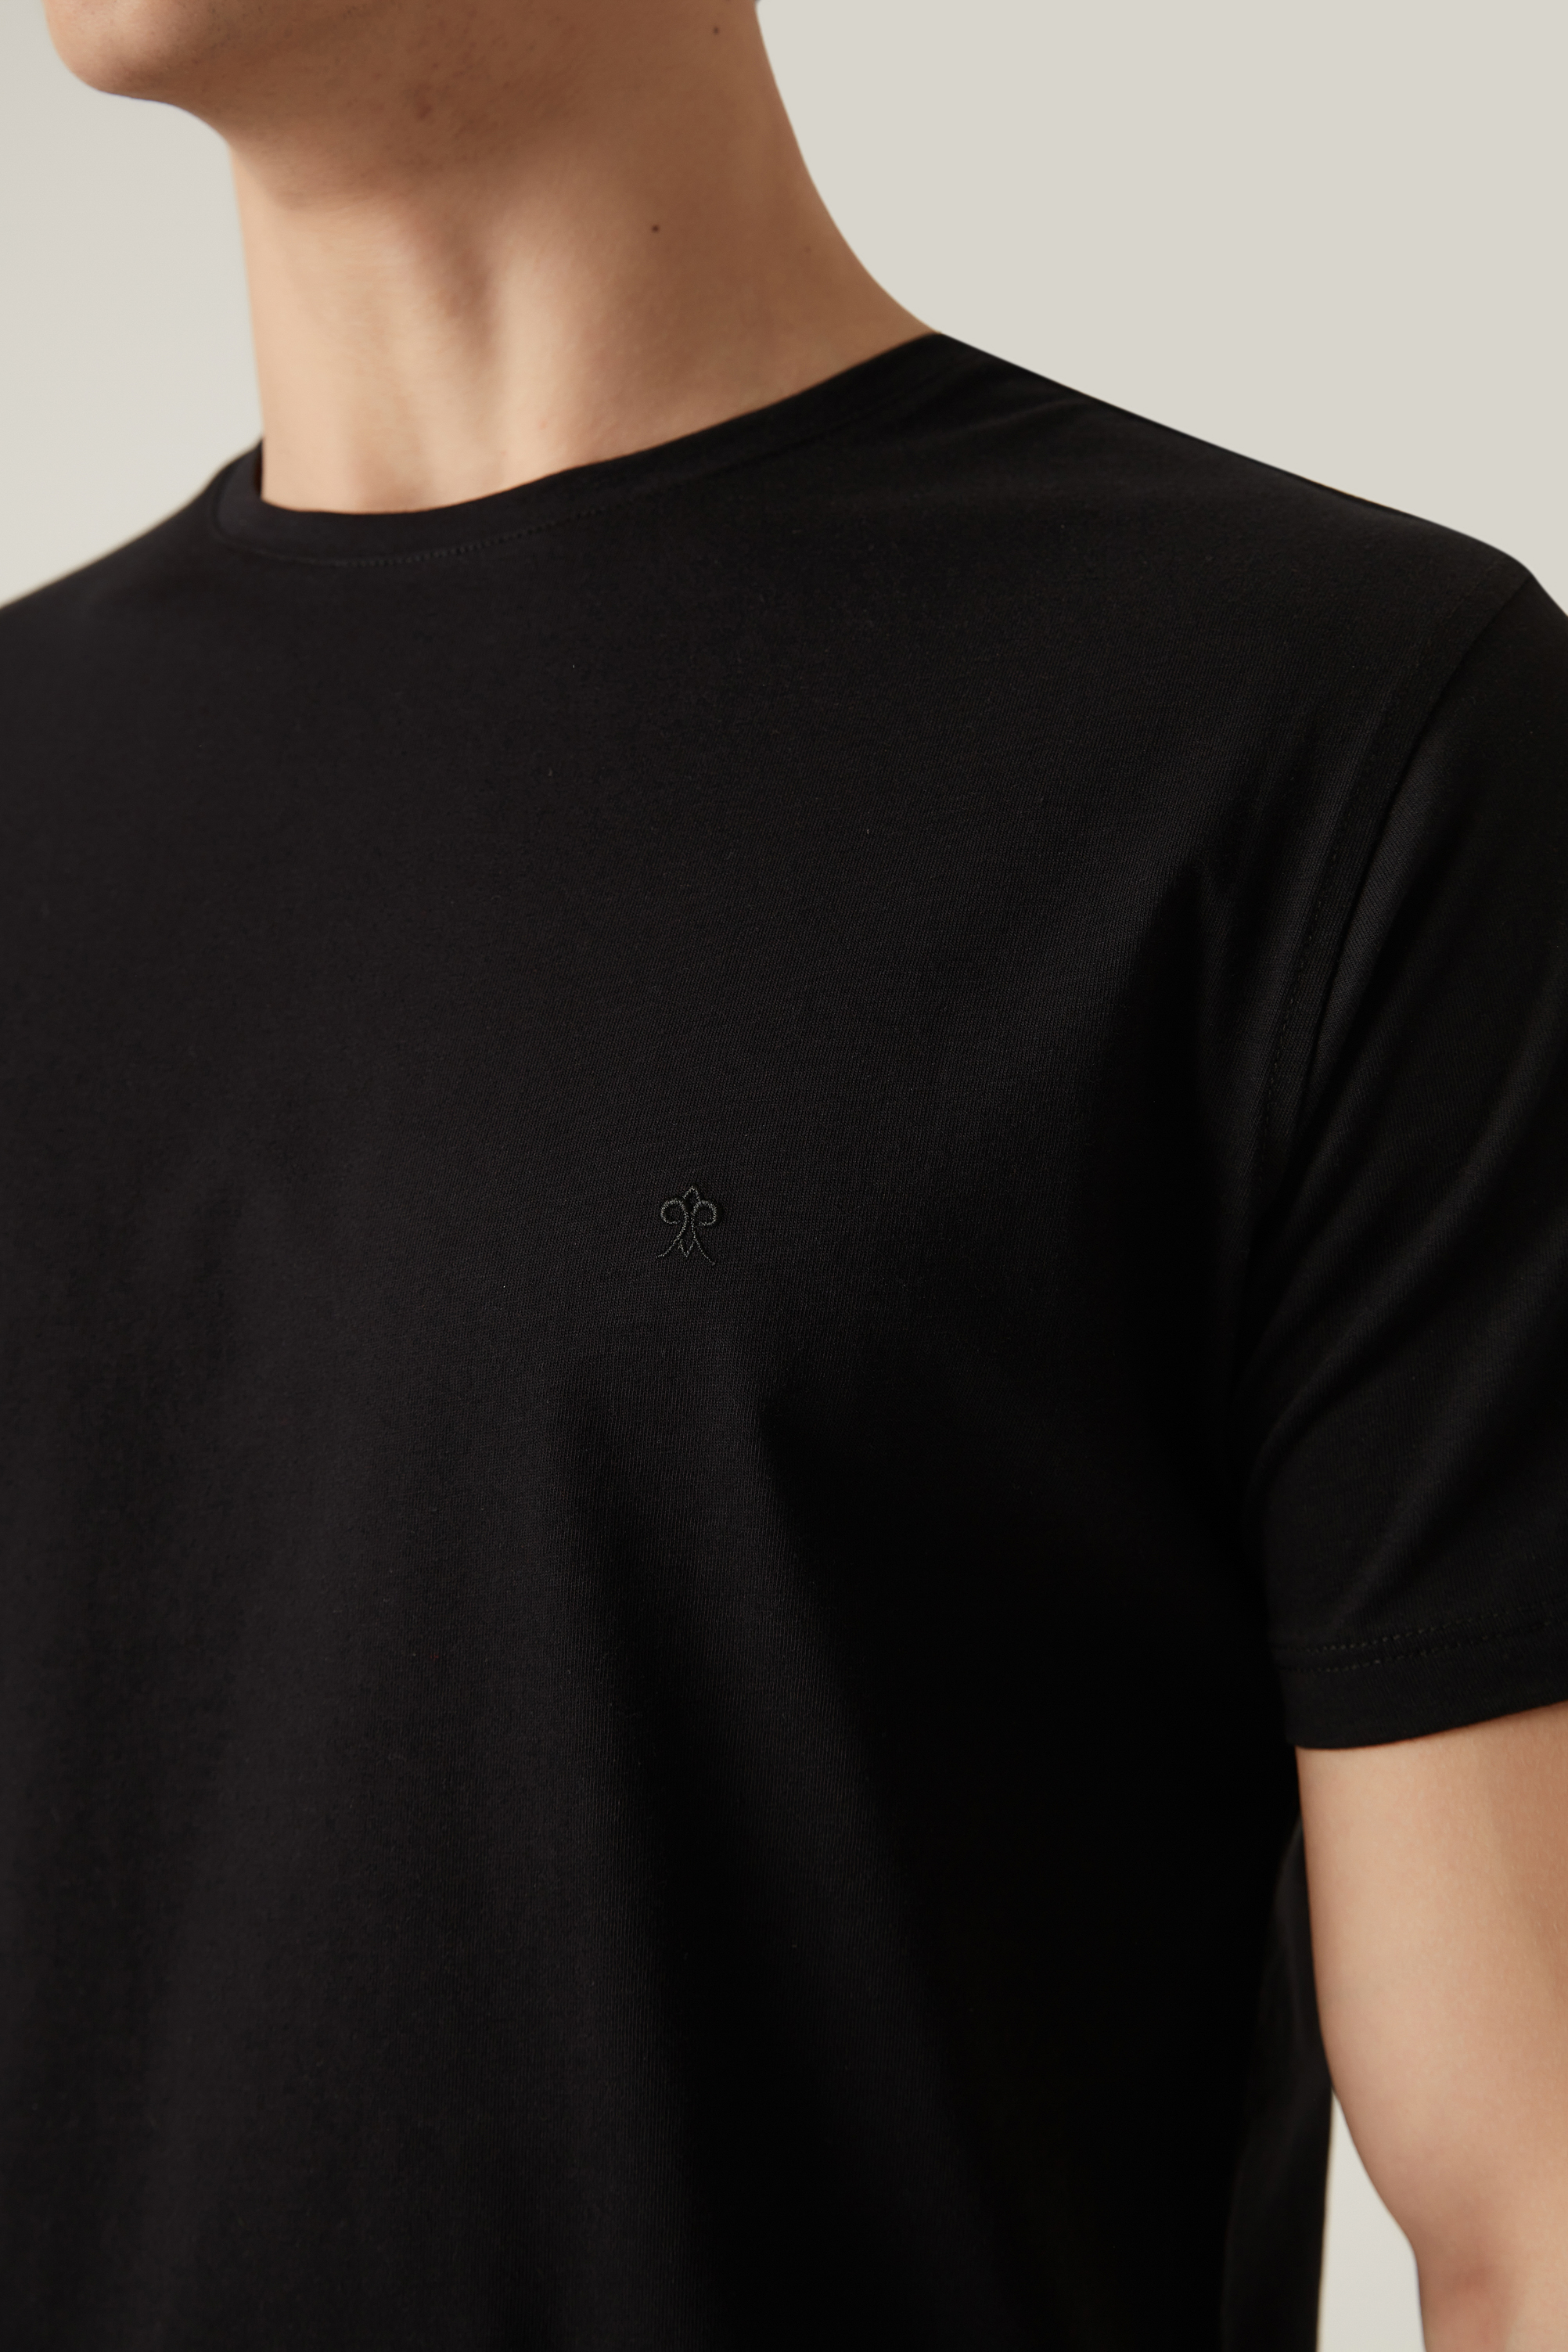 Damat Tween Damat Siyah T-shirt. 2